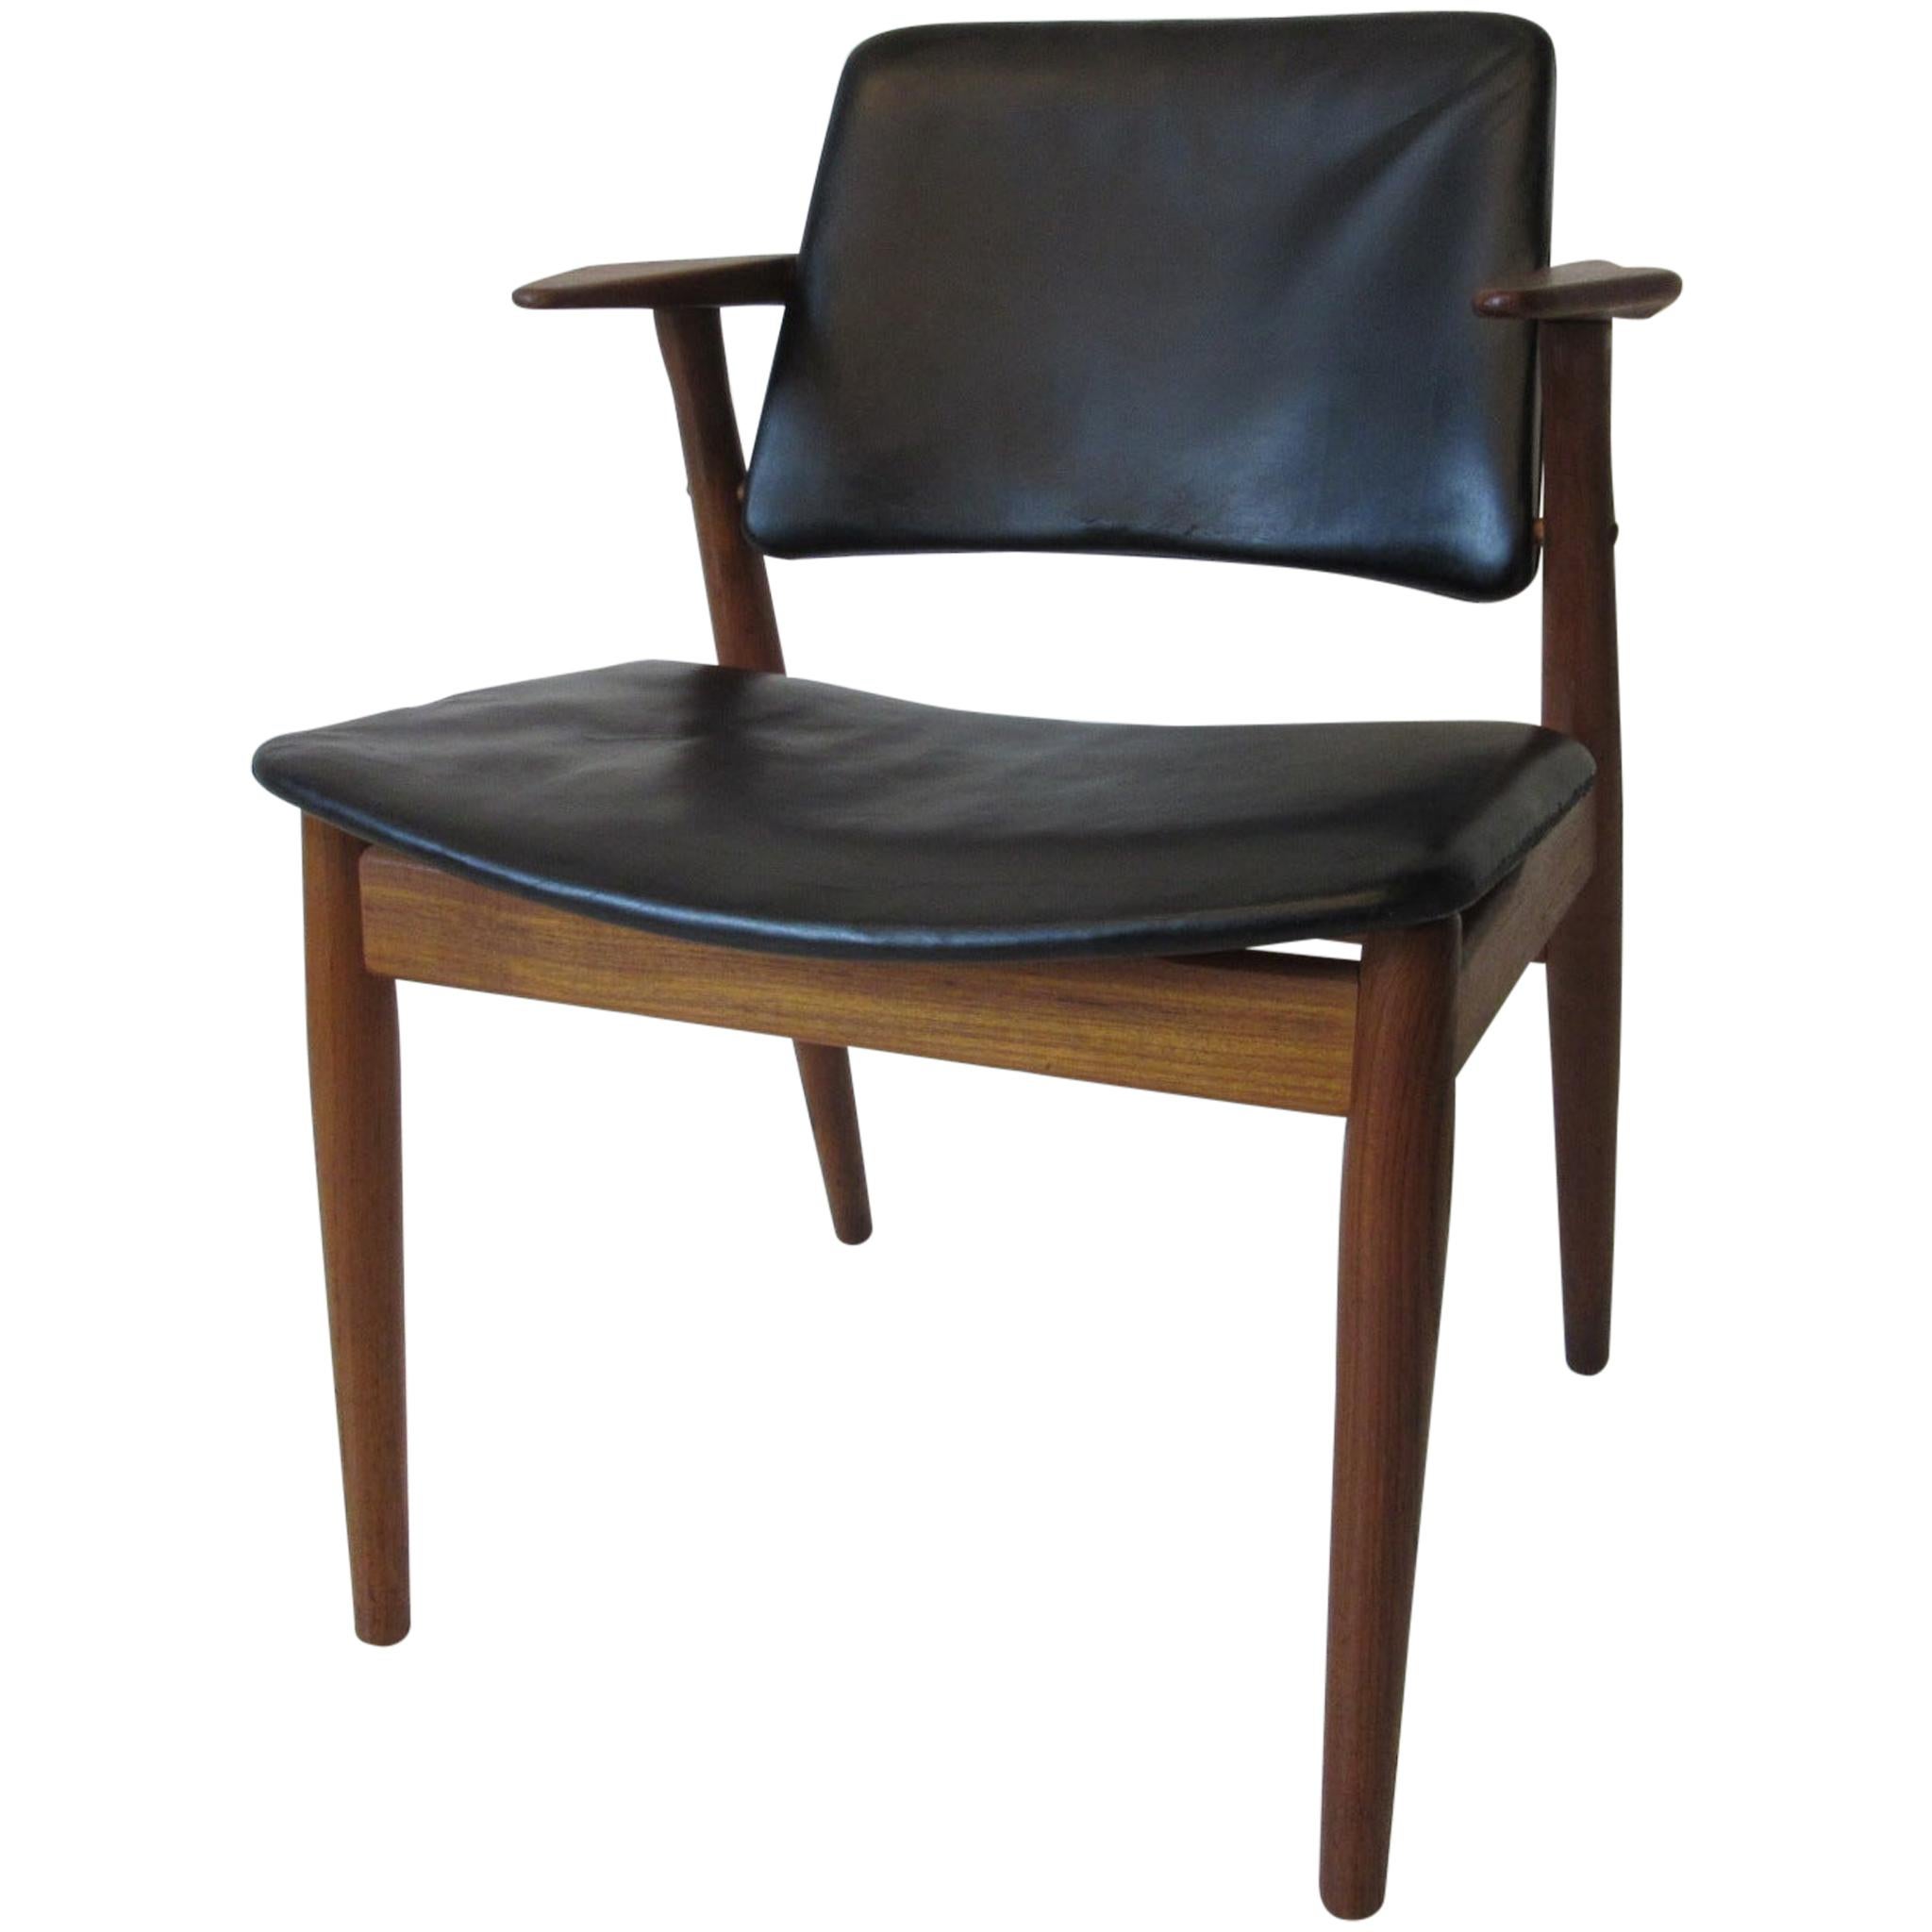 Arne Vodder Danish Chair Teak / Leather for Helge Sibast